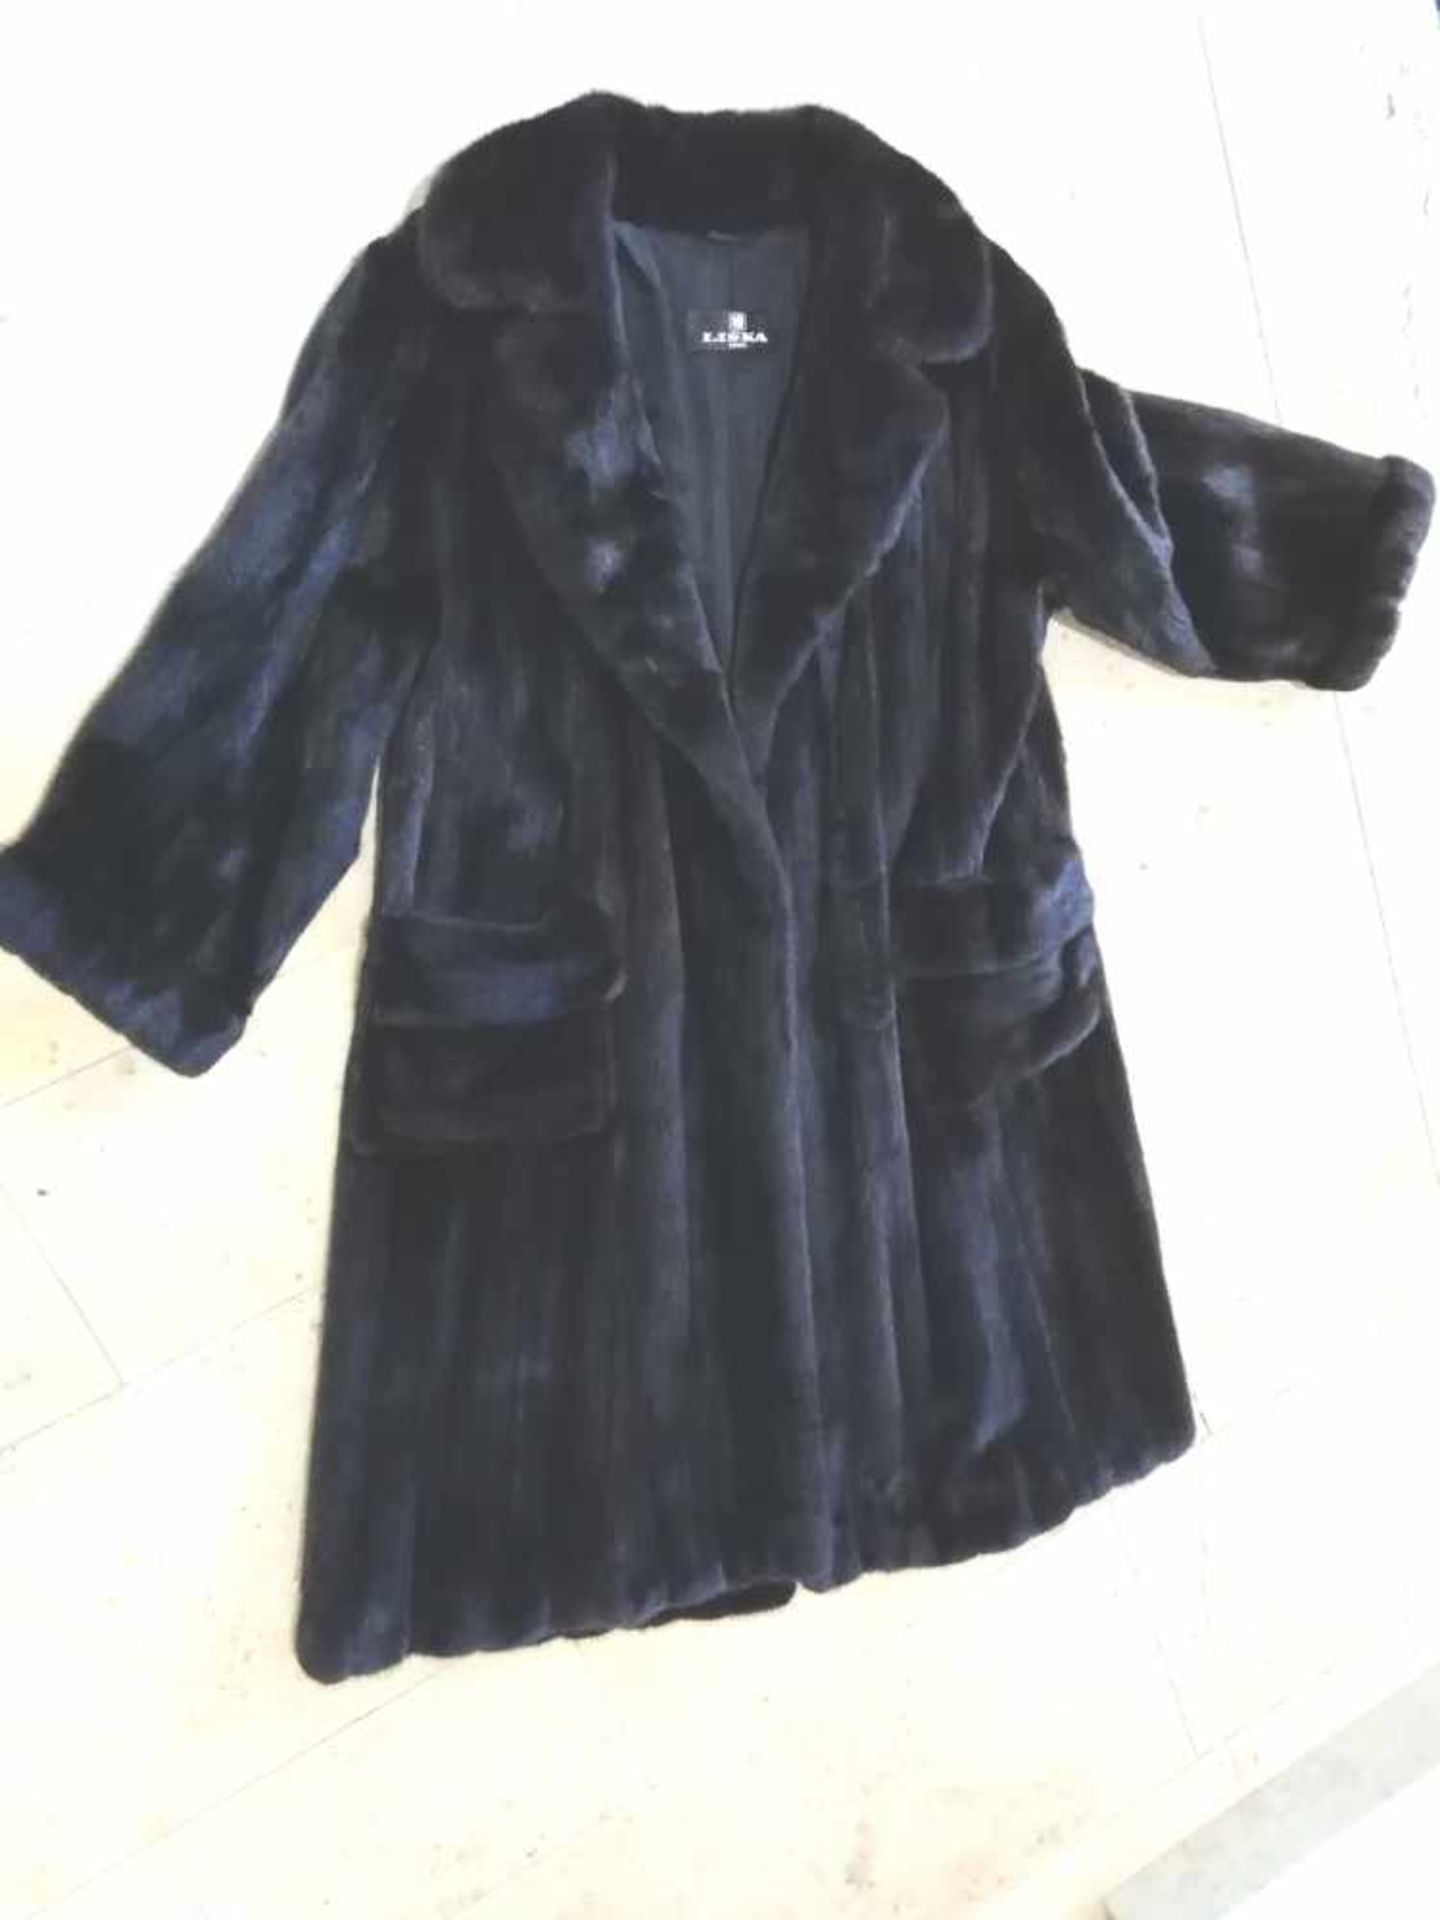 Langer Nerzmantel dunkelbraun-schwarz, seitliche Taschen, Herrenfasson, Marke Liska, Größe M, sehr